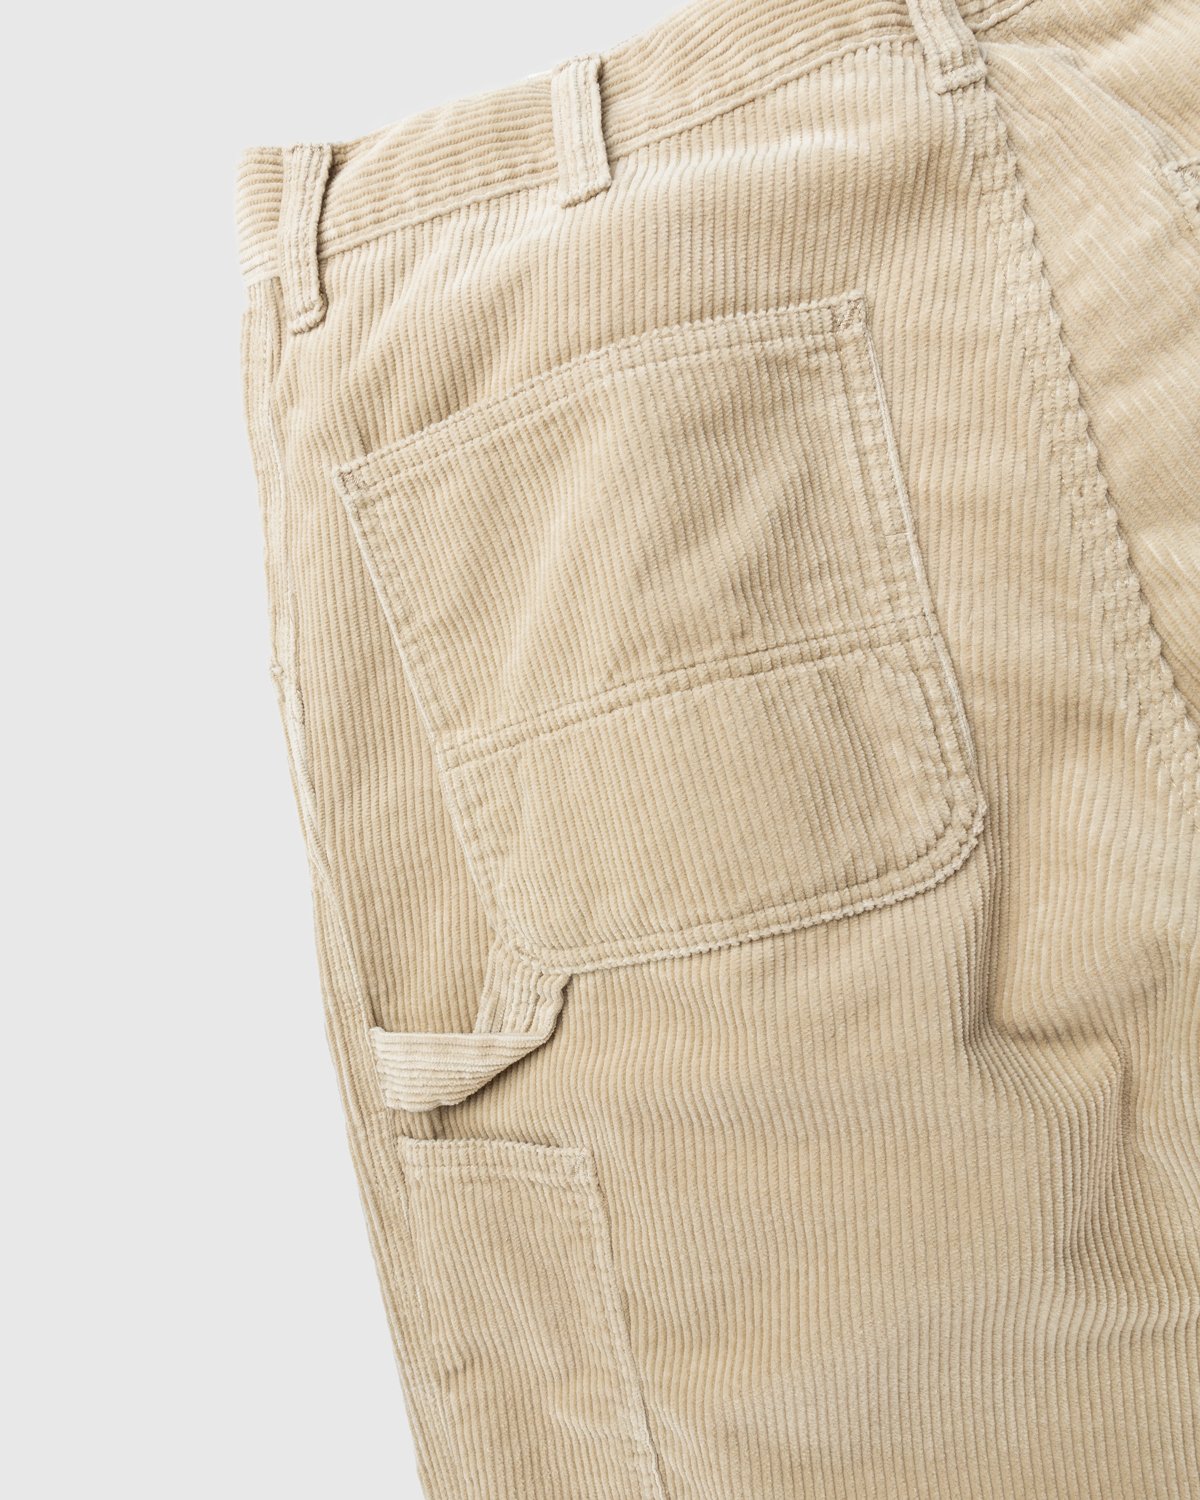 Carhartt WIP - Ruck Single Knee Pant Beige - Clothing - Brown - Image 4